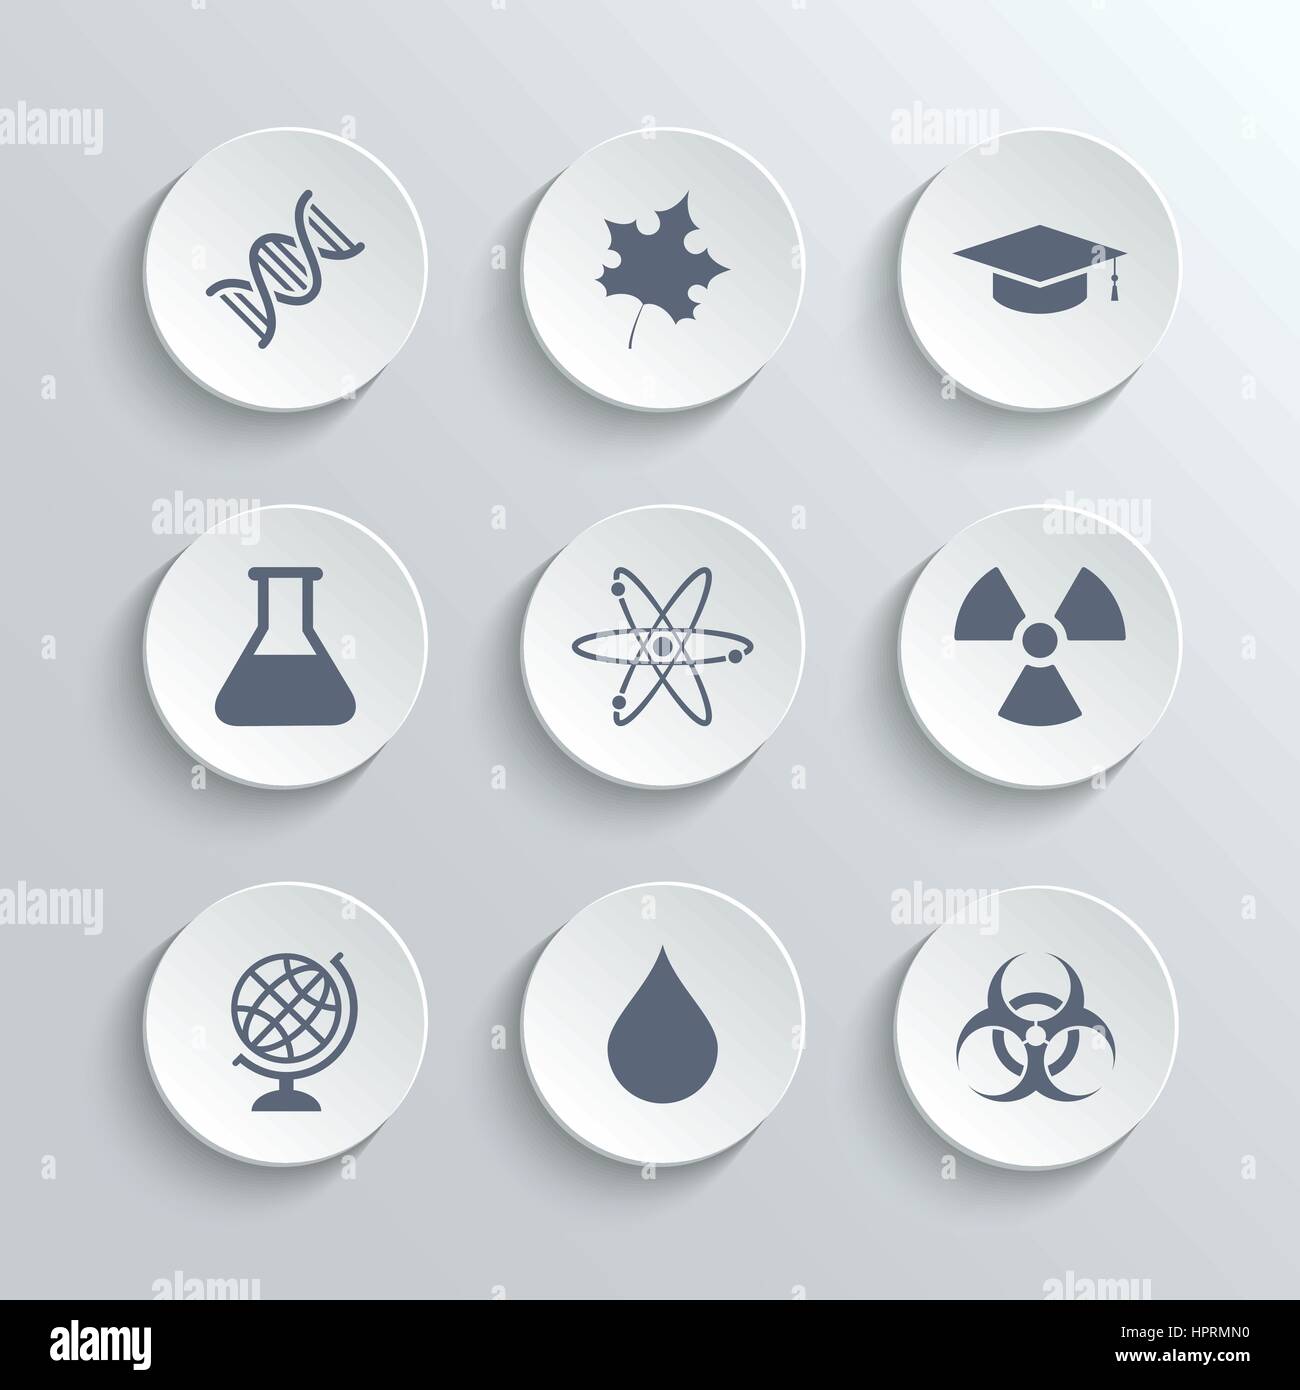 Wissenschaft Icons Set - Vektor weiß Runde Tasten mit DNA-Ahorn Blatt Graduierung GAP Atom Radioaktivität Bio Hazard Labor Glühbirne Globus Tropfen Wasser Stock Vektor